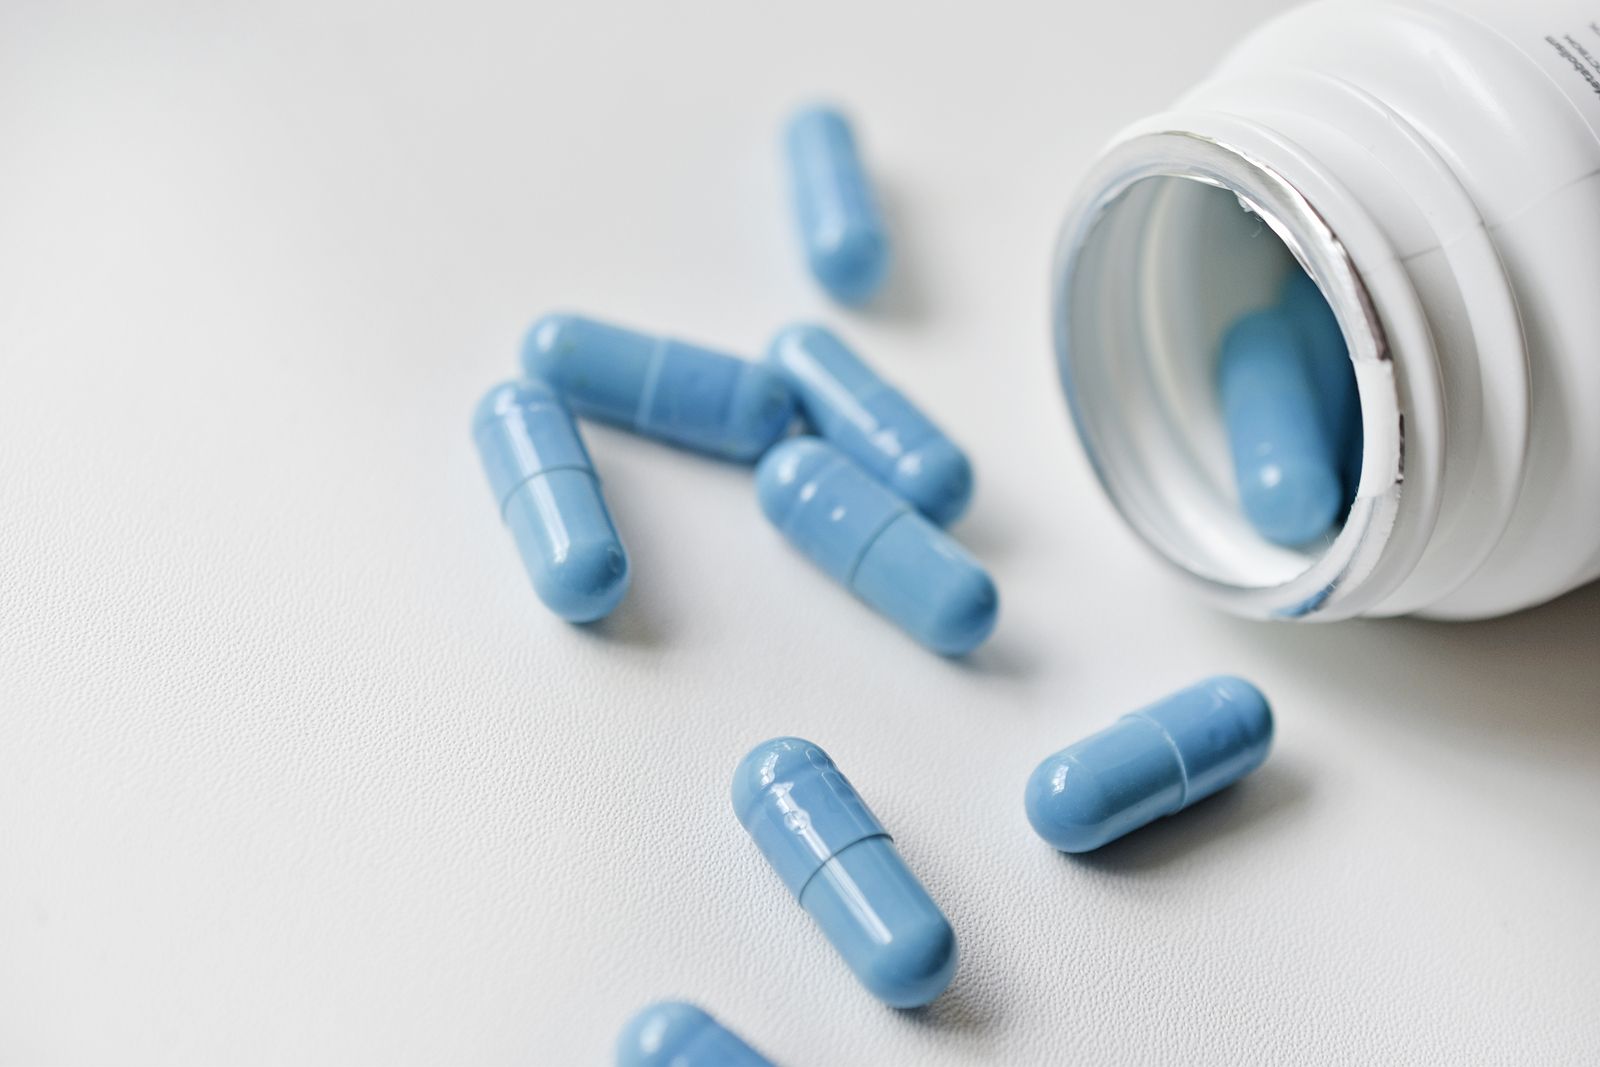 Desabastecimiento de medicamentos: Sanidad avisa sobre la escasez de un conocido antiinflamatorio